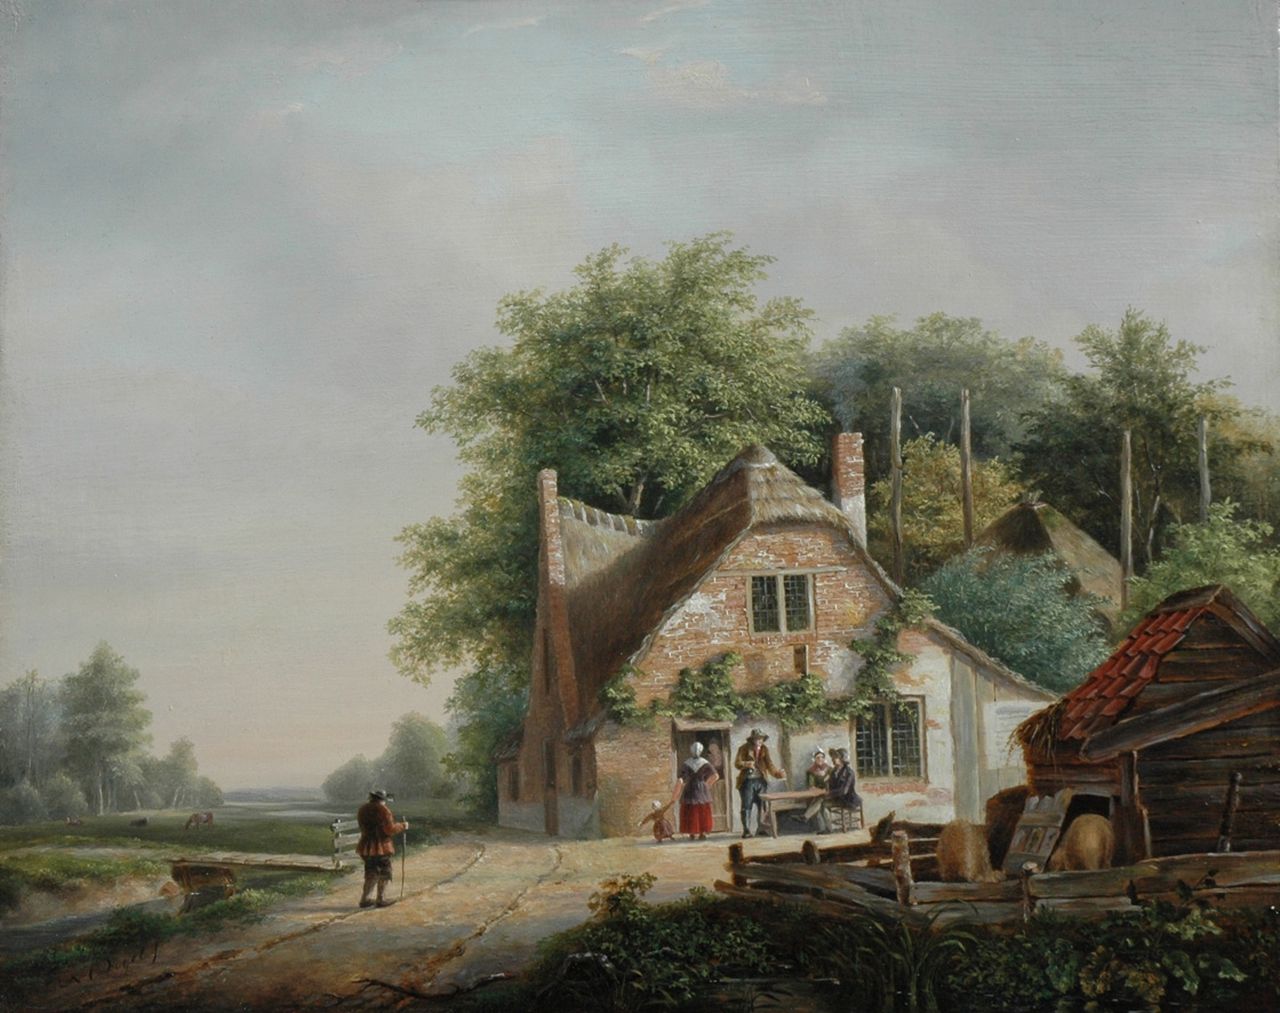 Vogel N.C.  | Nicolaas Cornelis Vogel, Reizigers en landvolk bij een herberg, olieverf op paneel 30,0 x 38,0 cm, gesigneerd linksonder